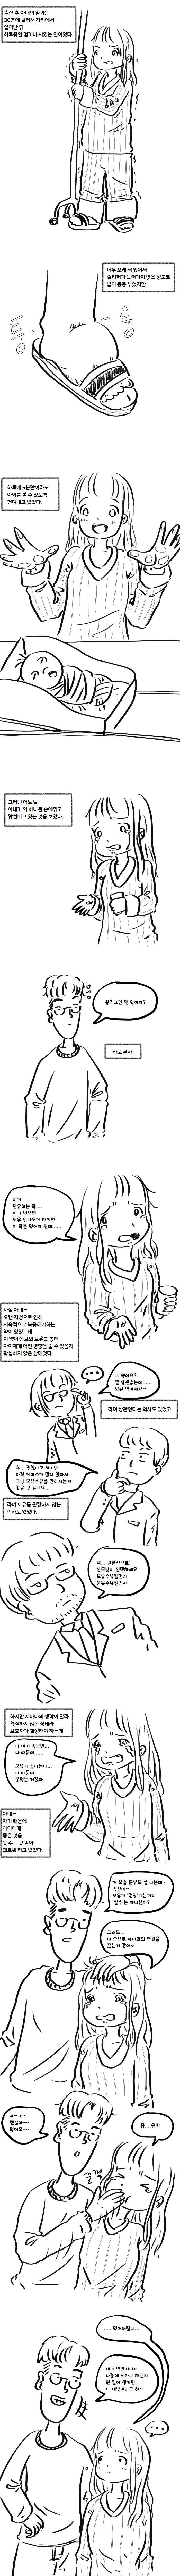 노잼 리얼결혼생활39(모유수유, 산후우울증).manhwa